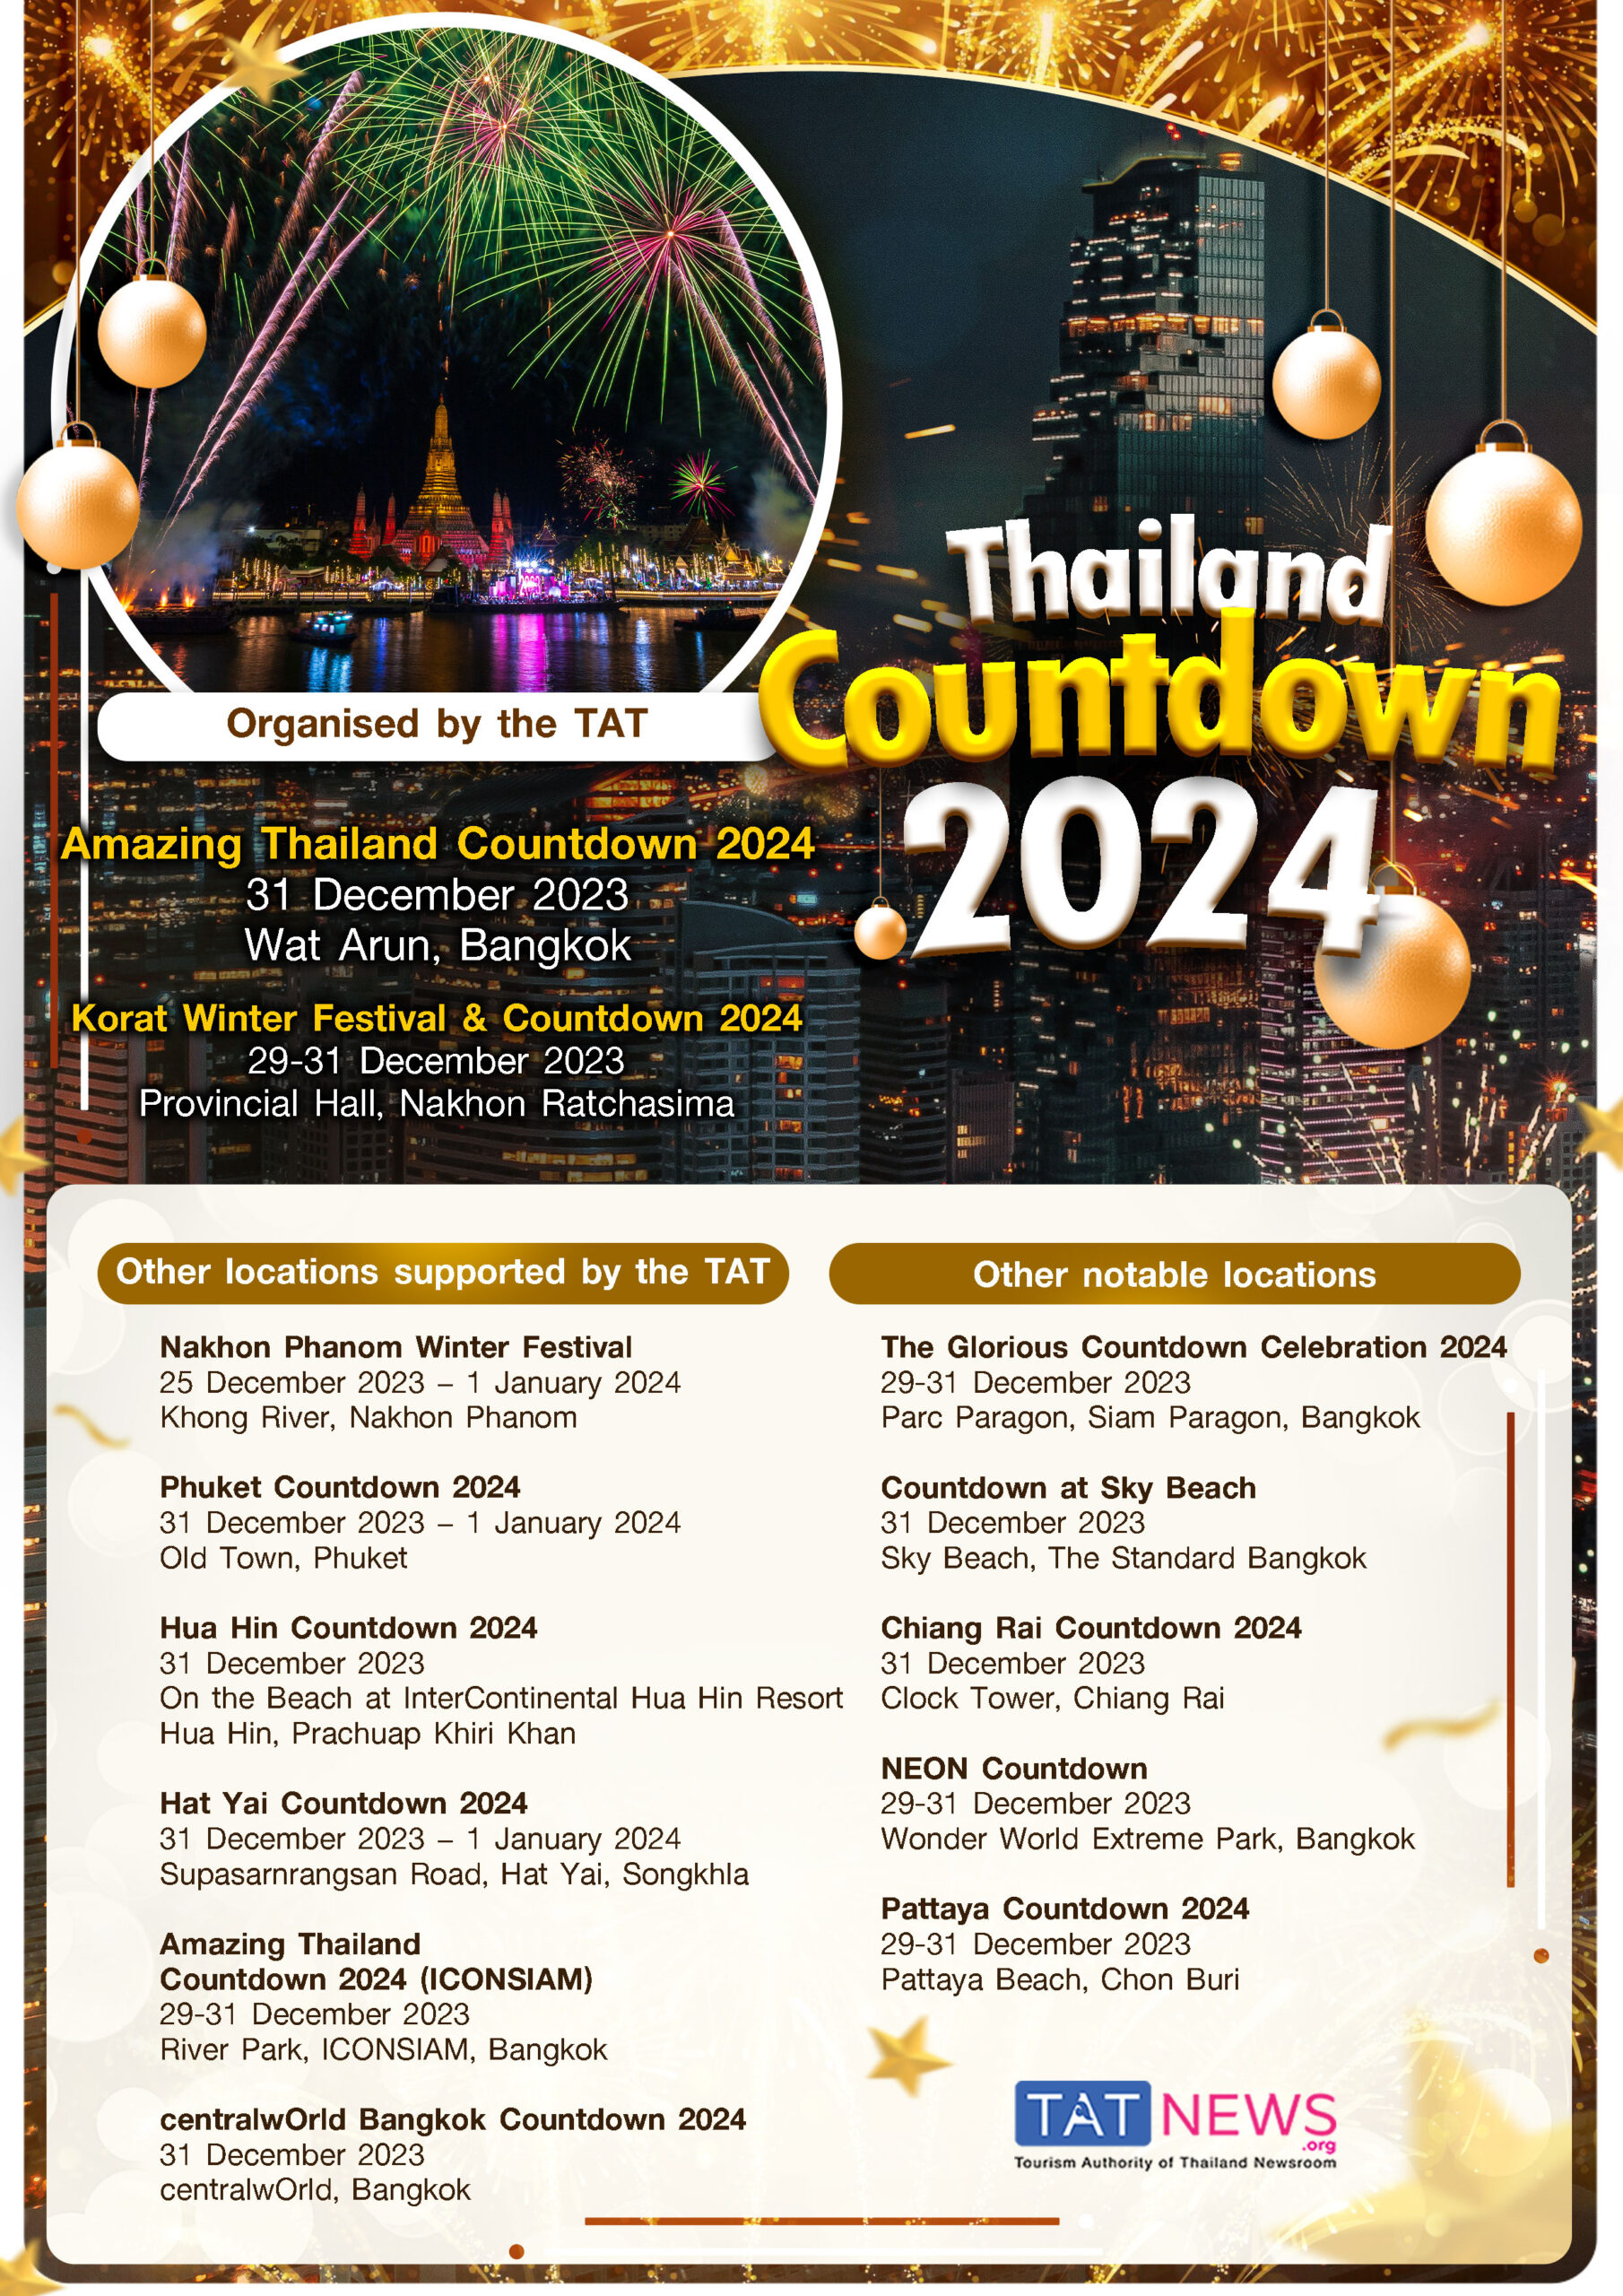 Thailand Countdown 2024